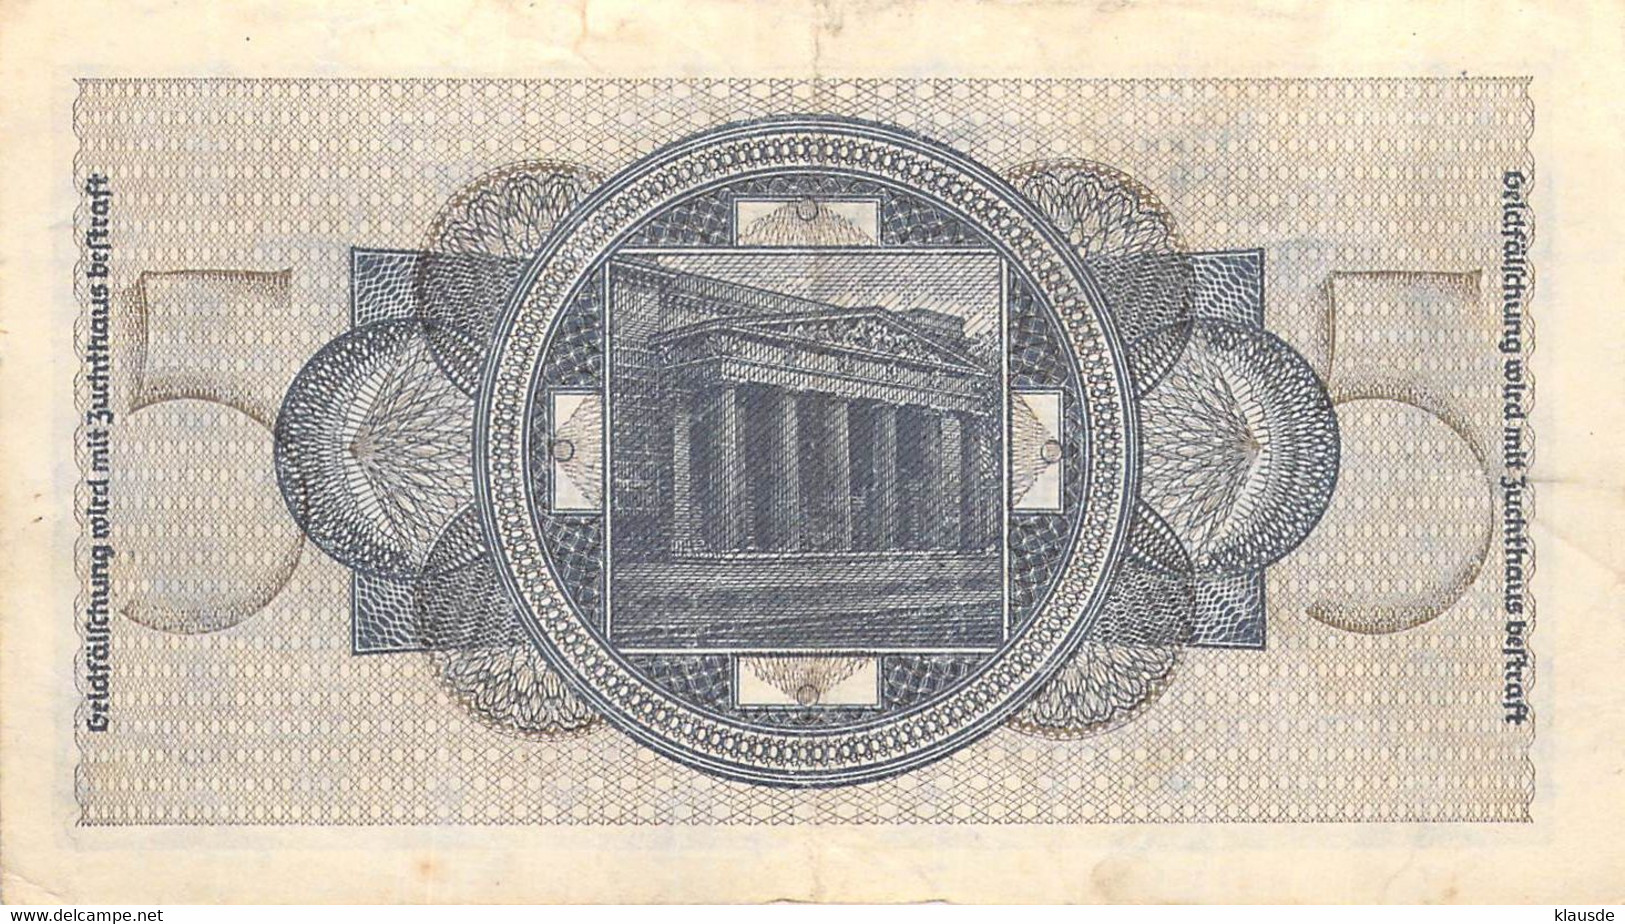 5 Mark Reichsbanknote UNC (I) Ohne Datum Deutsche Besetzung - Tweede Wereldoorlog